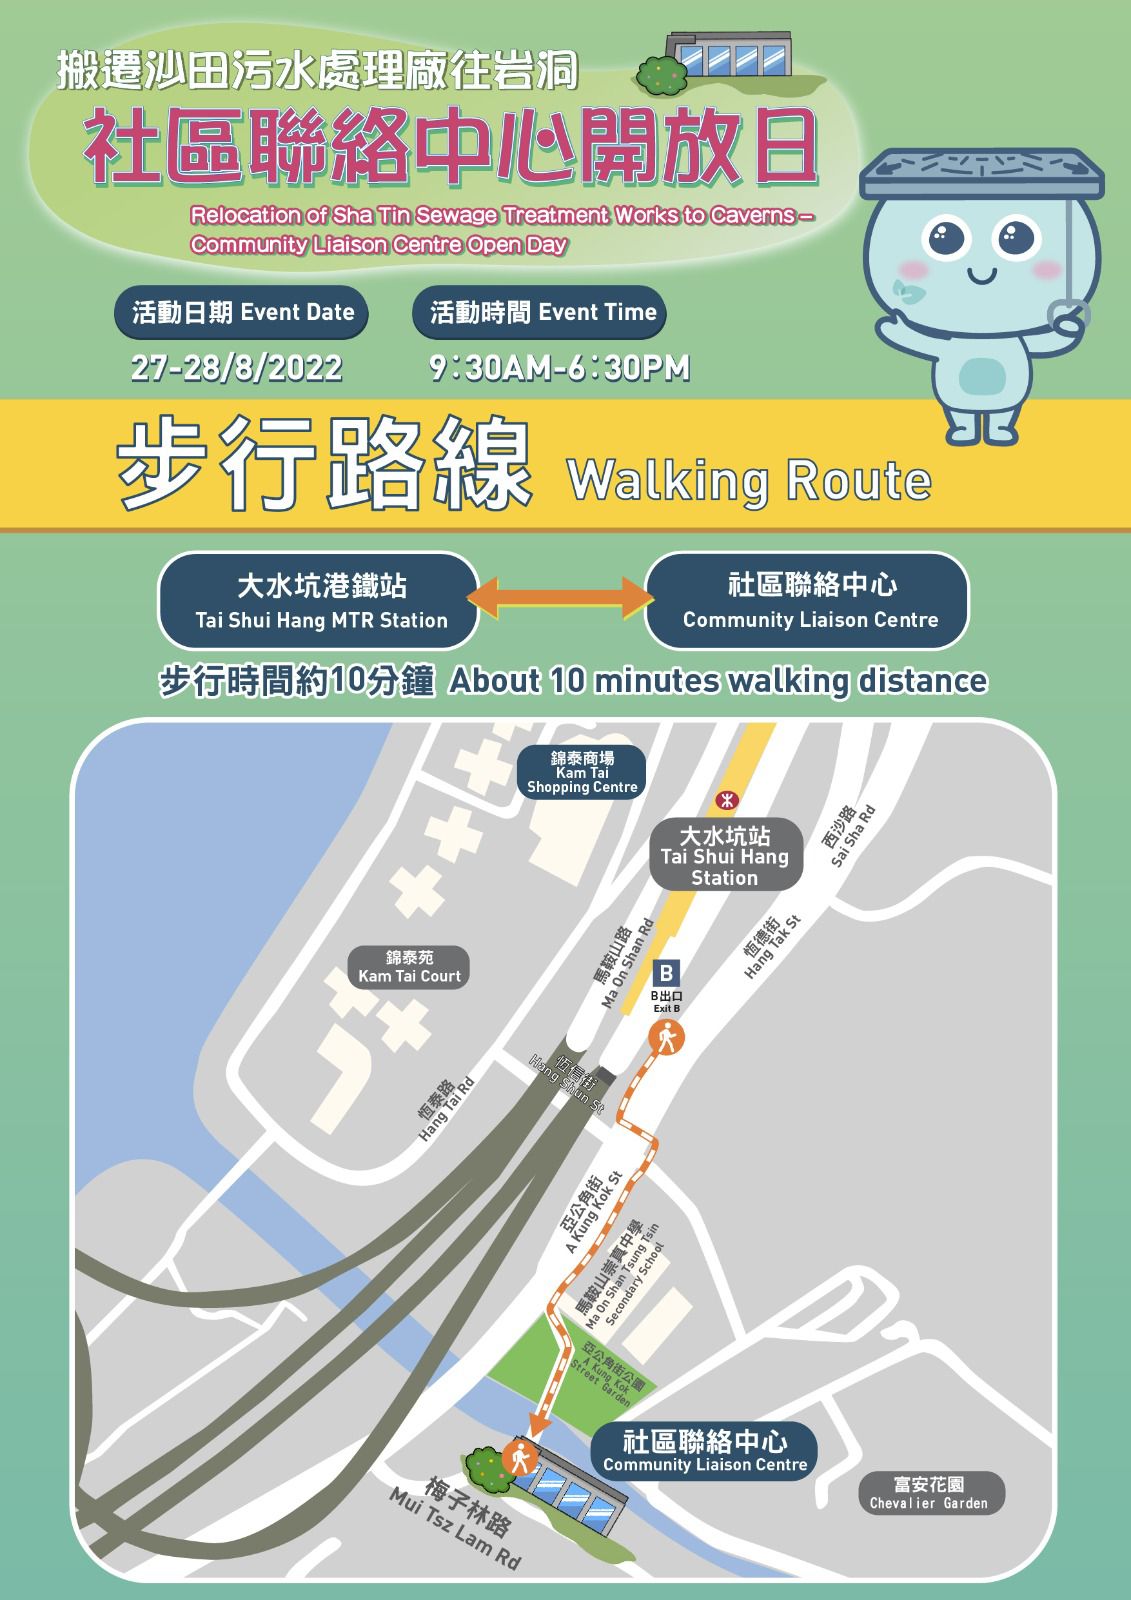  Walking Route